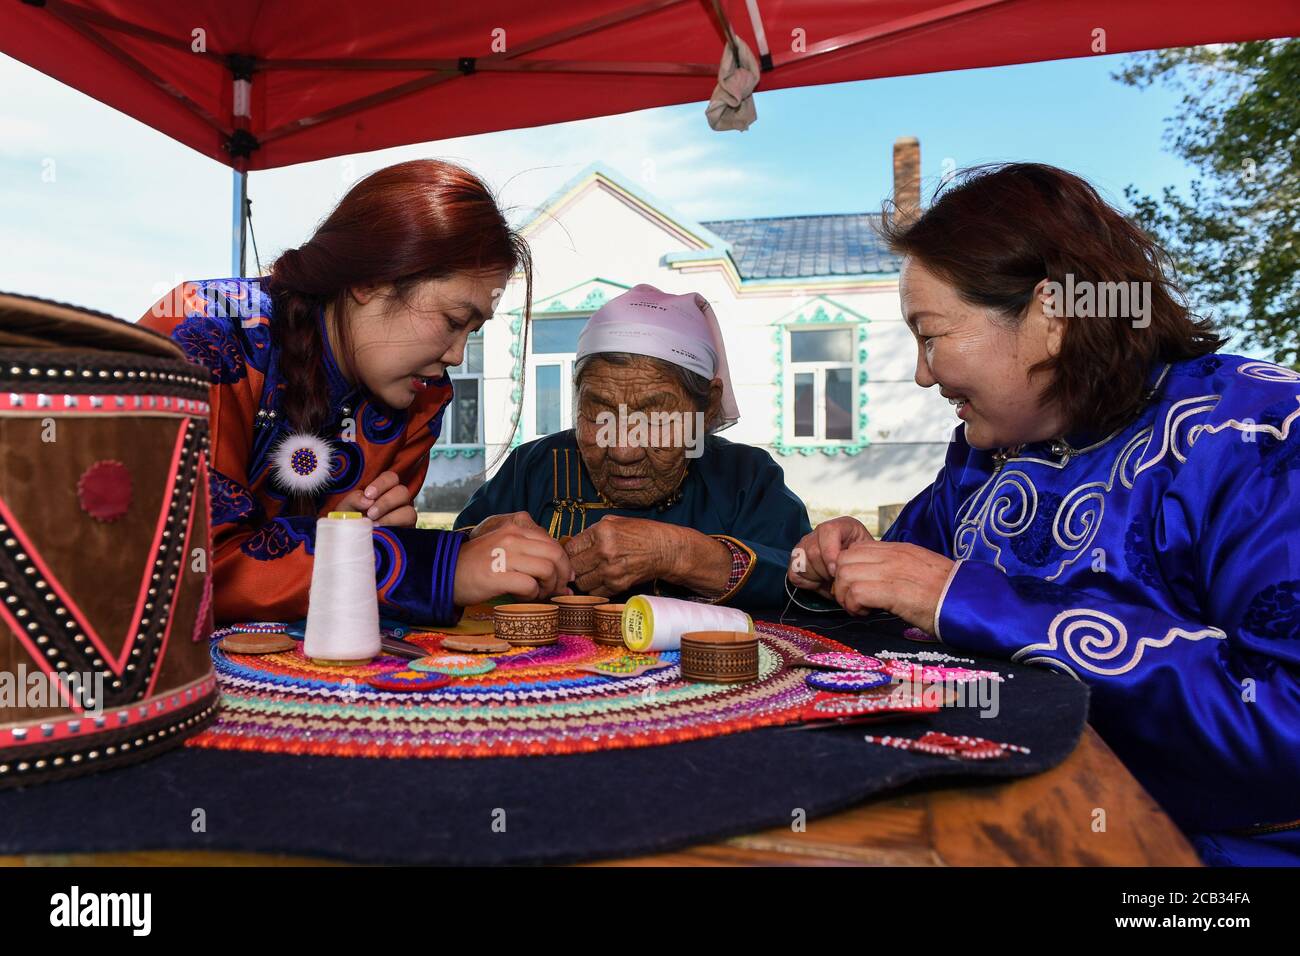 (200810) -- HULUN BUIR, 10 agosto 2020 (Xinhua) -- Aijim (L) impara il metodo di fare 'un fiore' da sua nonna (C) in Ewenki Autonomous Banner, North China Inner Mongolia Autonomous Region, 6 agosto 2020. Aijim è una ragazza post-90 del gruppo etnico di Ewenki che vive nella regione autonoma della Mongolia interna. Nel 2014, tornò nella sua città natale a Ewenki Autonomous Banner, Hulun Buir City, dopo la laurea all'università, e aiutò sua madre Uran a gestire uno studio di artigianato. Fanno artigianato a tema su 'un fiore', e hanno aperto il commercio in linea per vendere i prodotti. "Dietro la manica Foto Stock